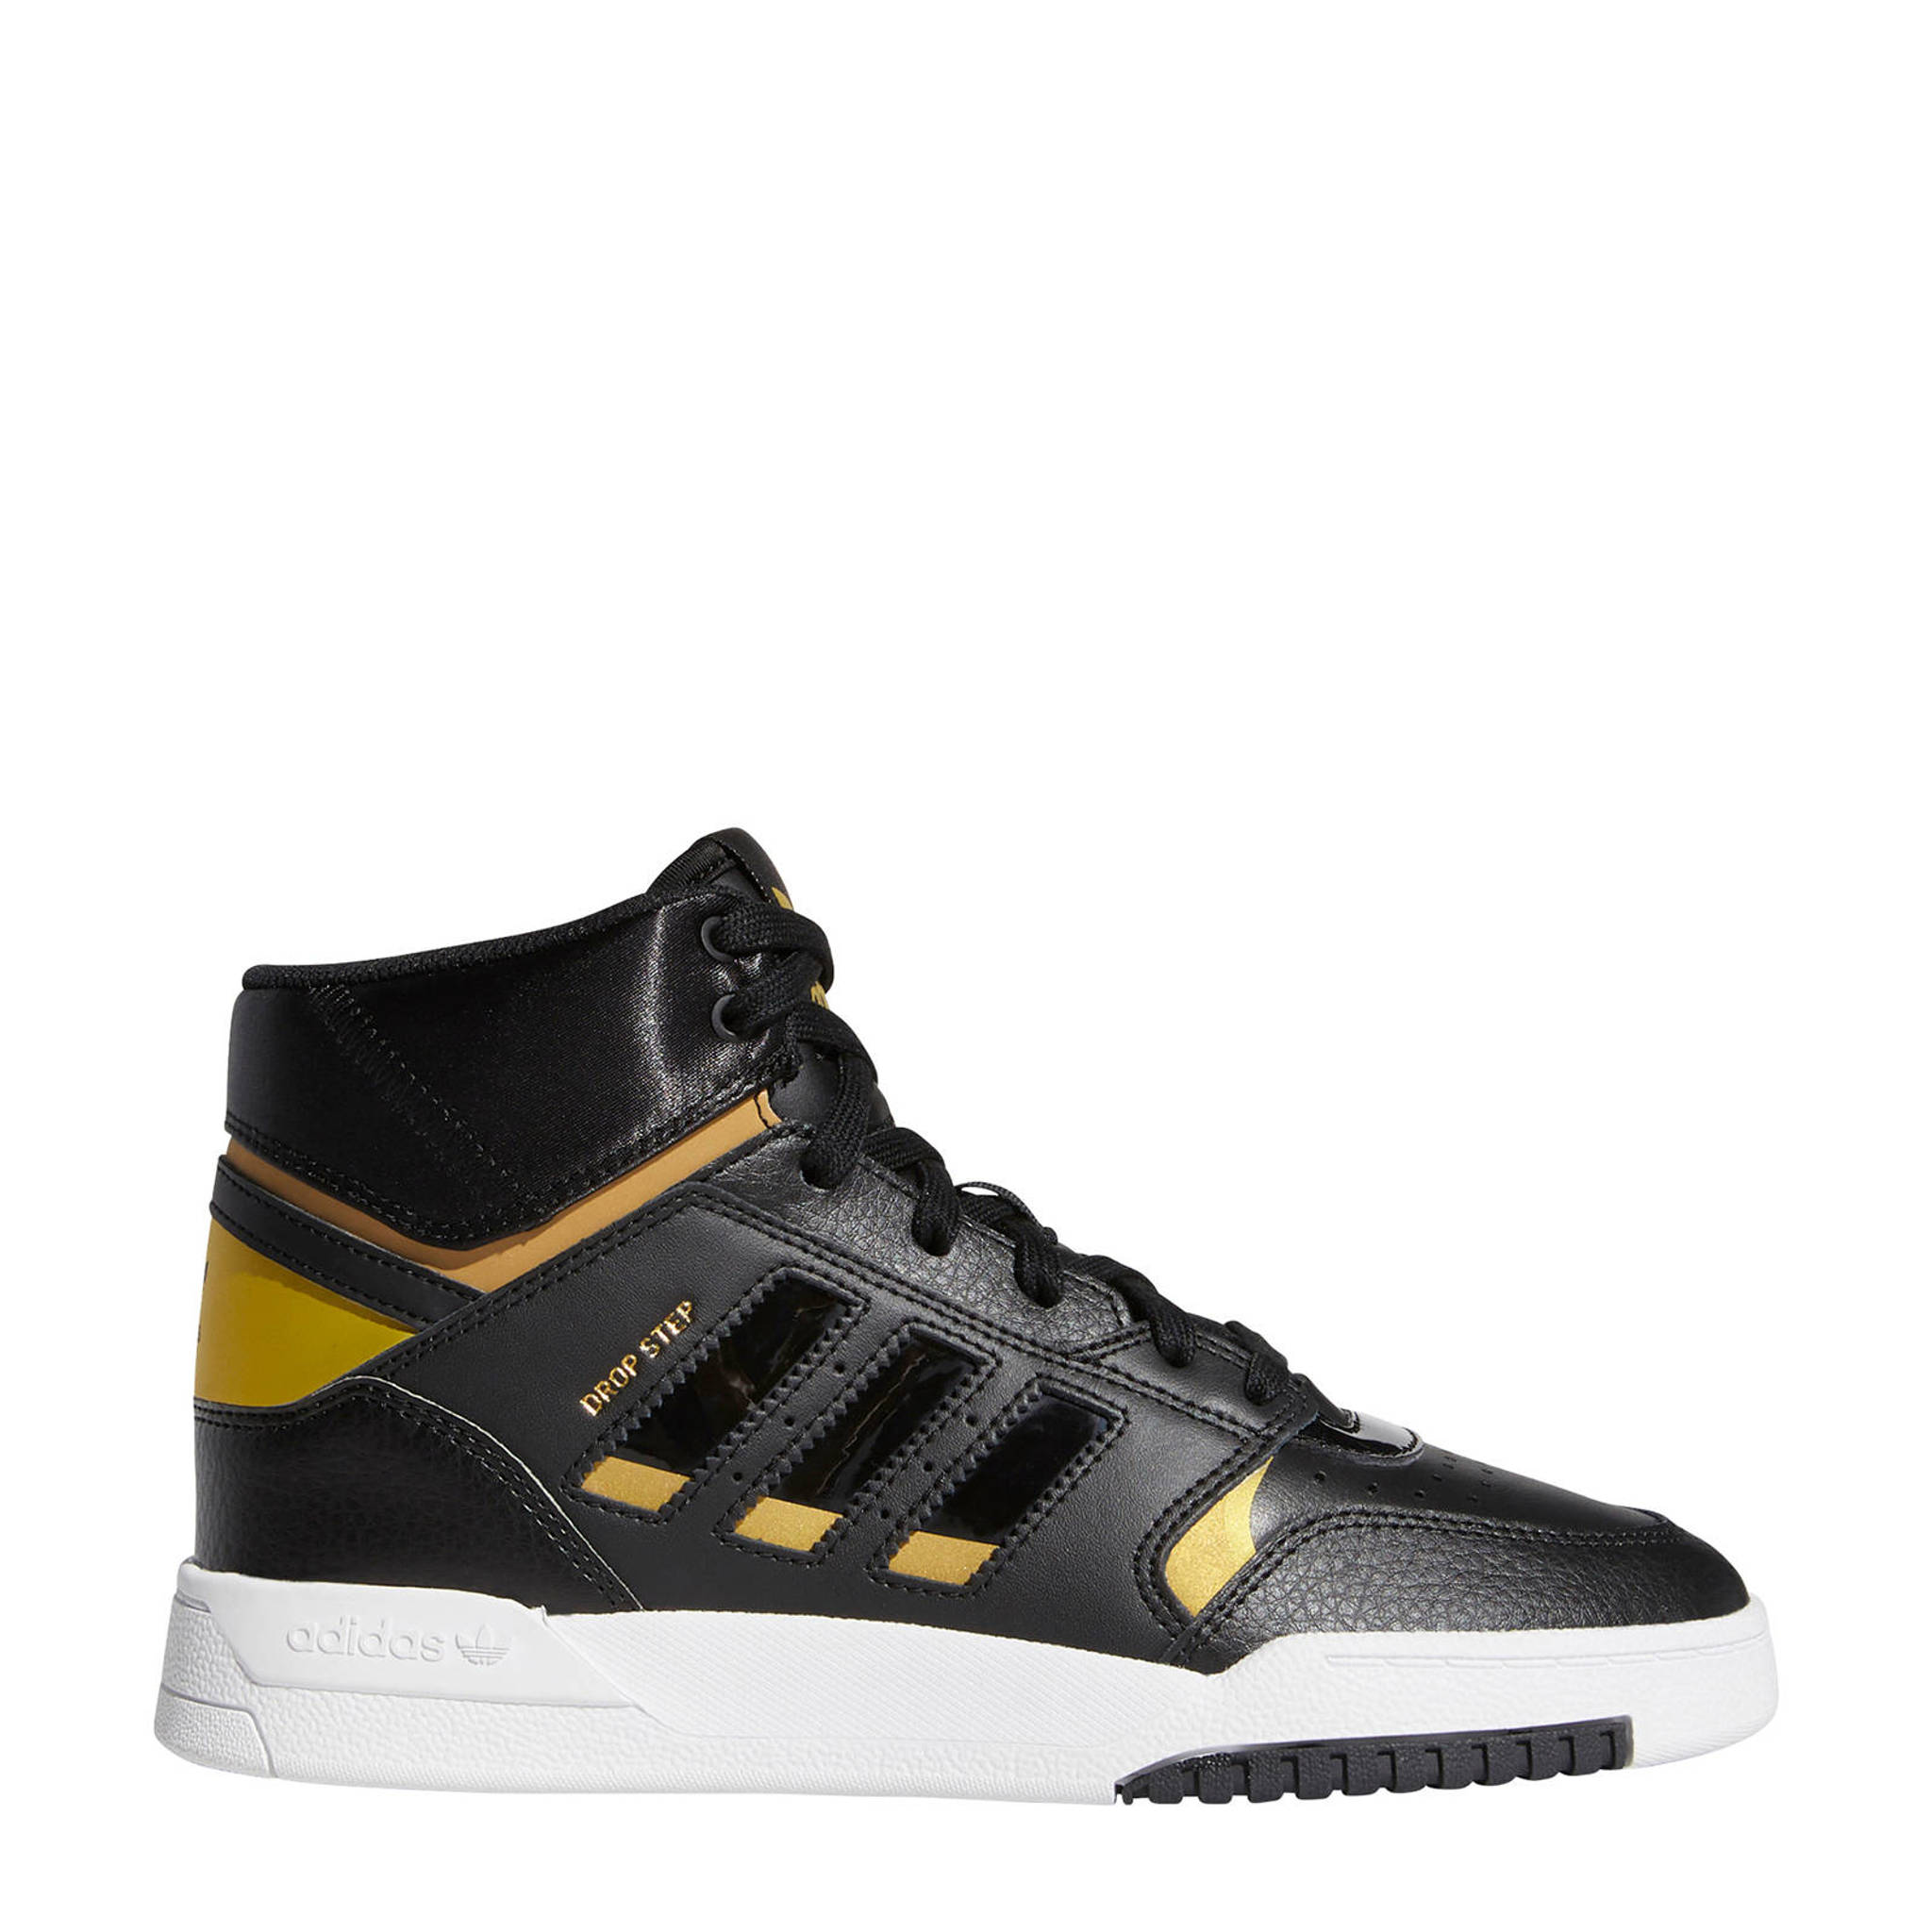 Goede adidas Originals Drop Step leren sneakers zwart/goud metallic AQ-41